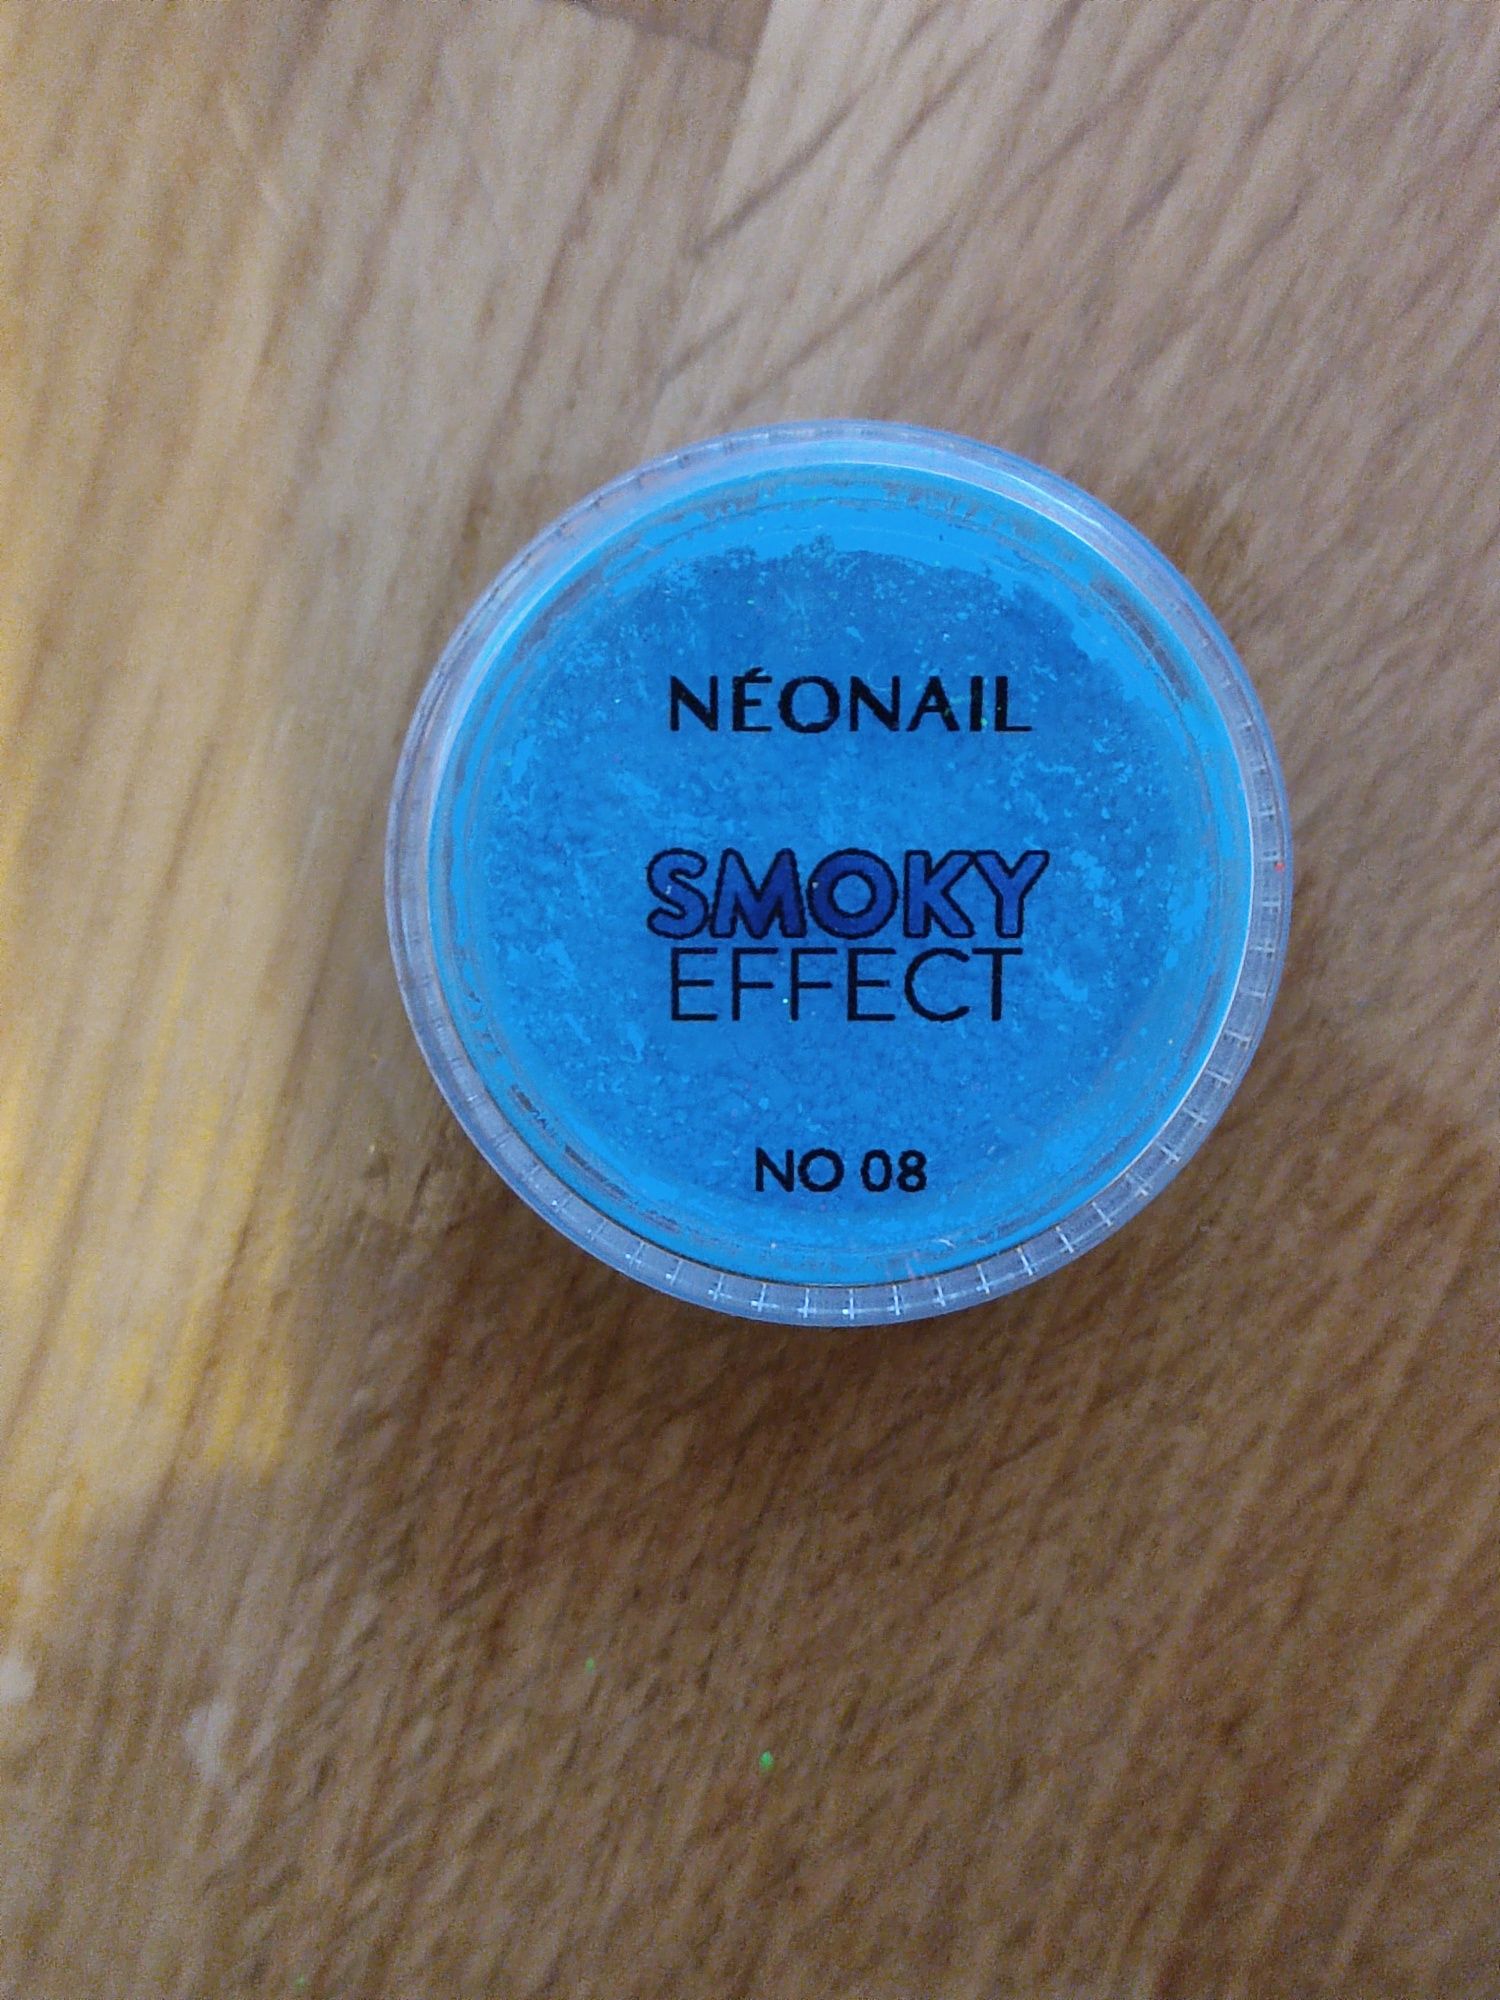 Nowy pyłek do paznokci neonail smoky effect 08 niebieski manicure